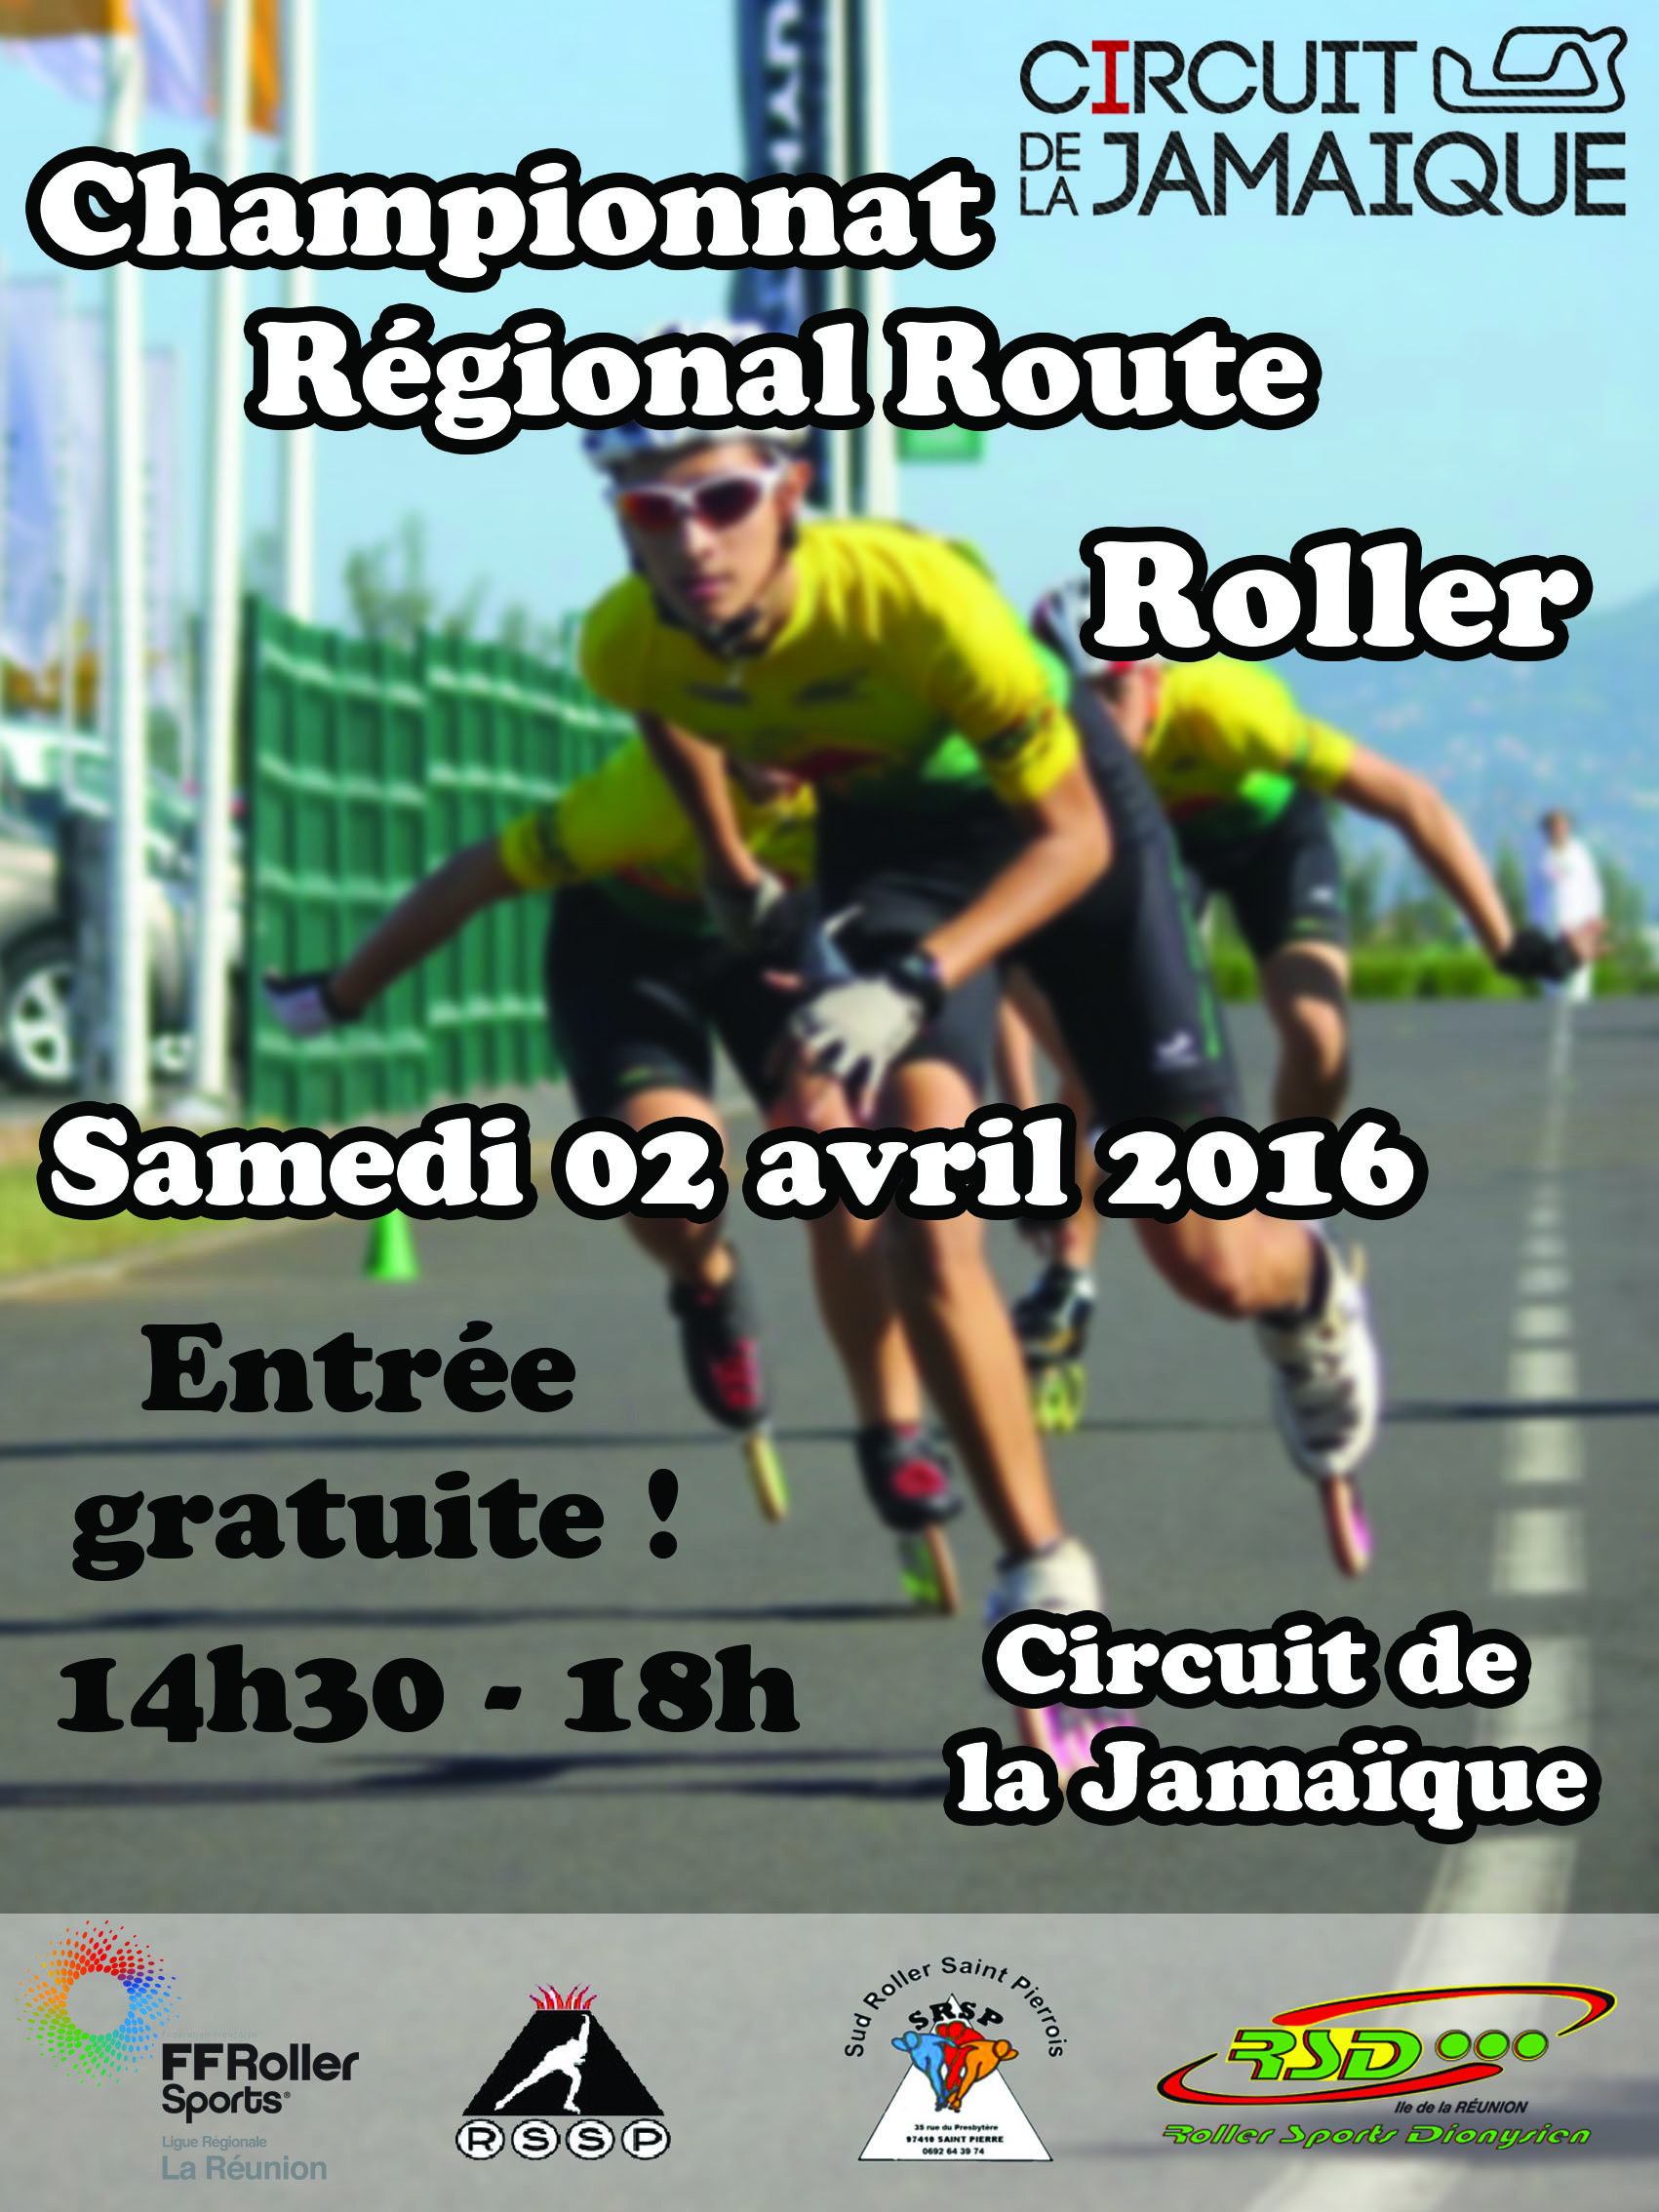 Championnat Régional Route Roller ce samedi